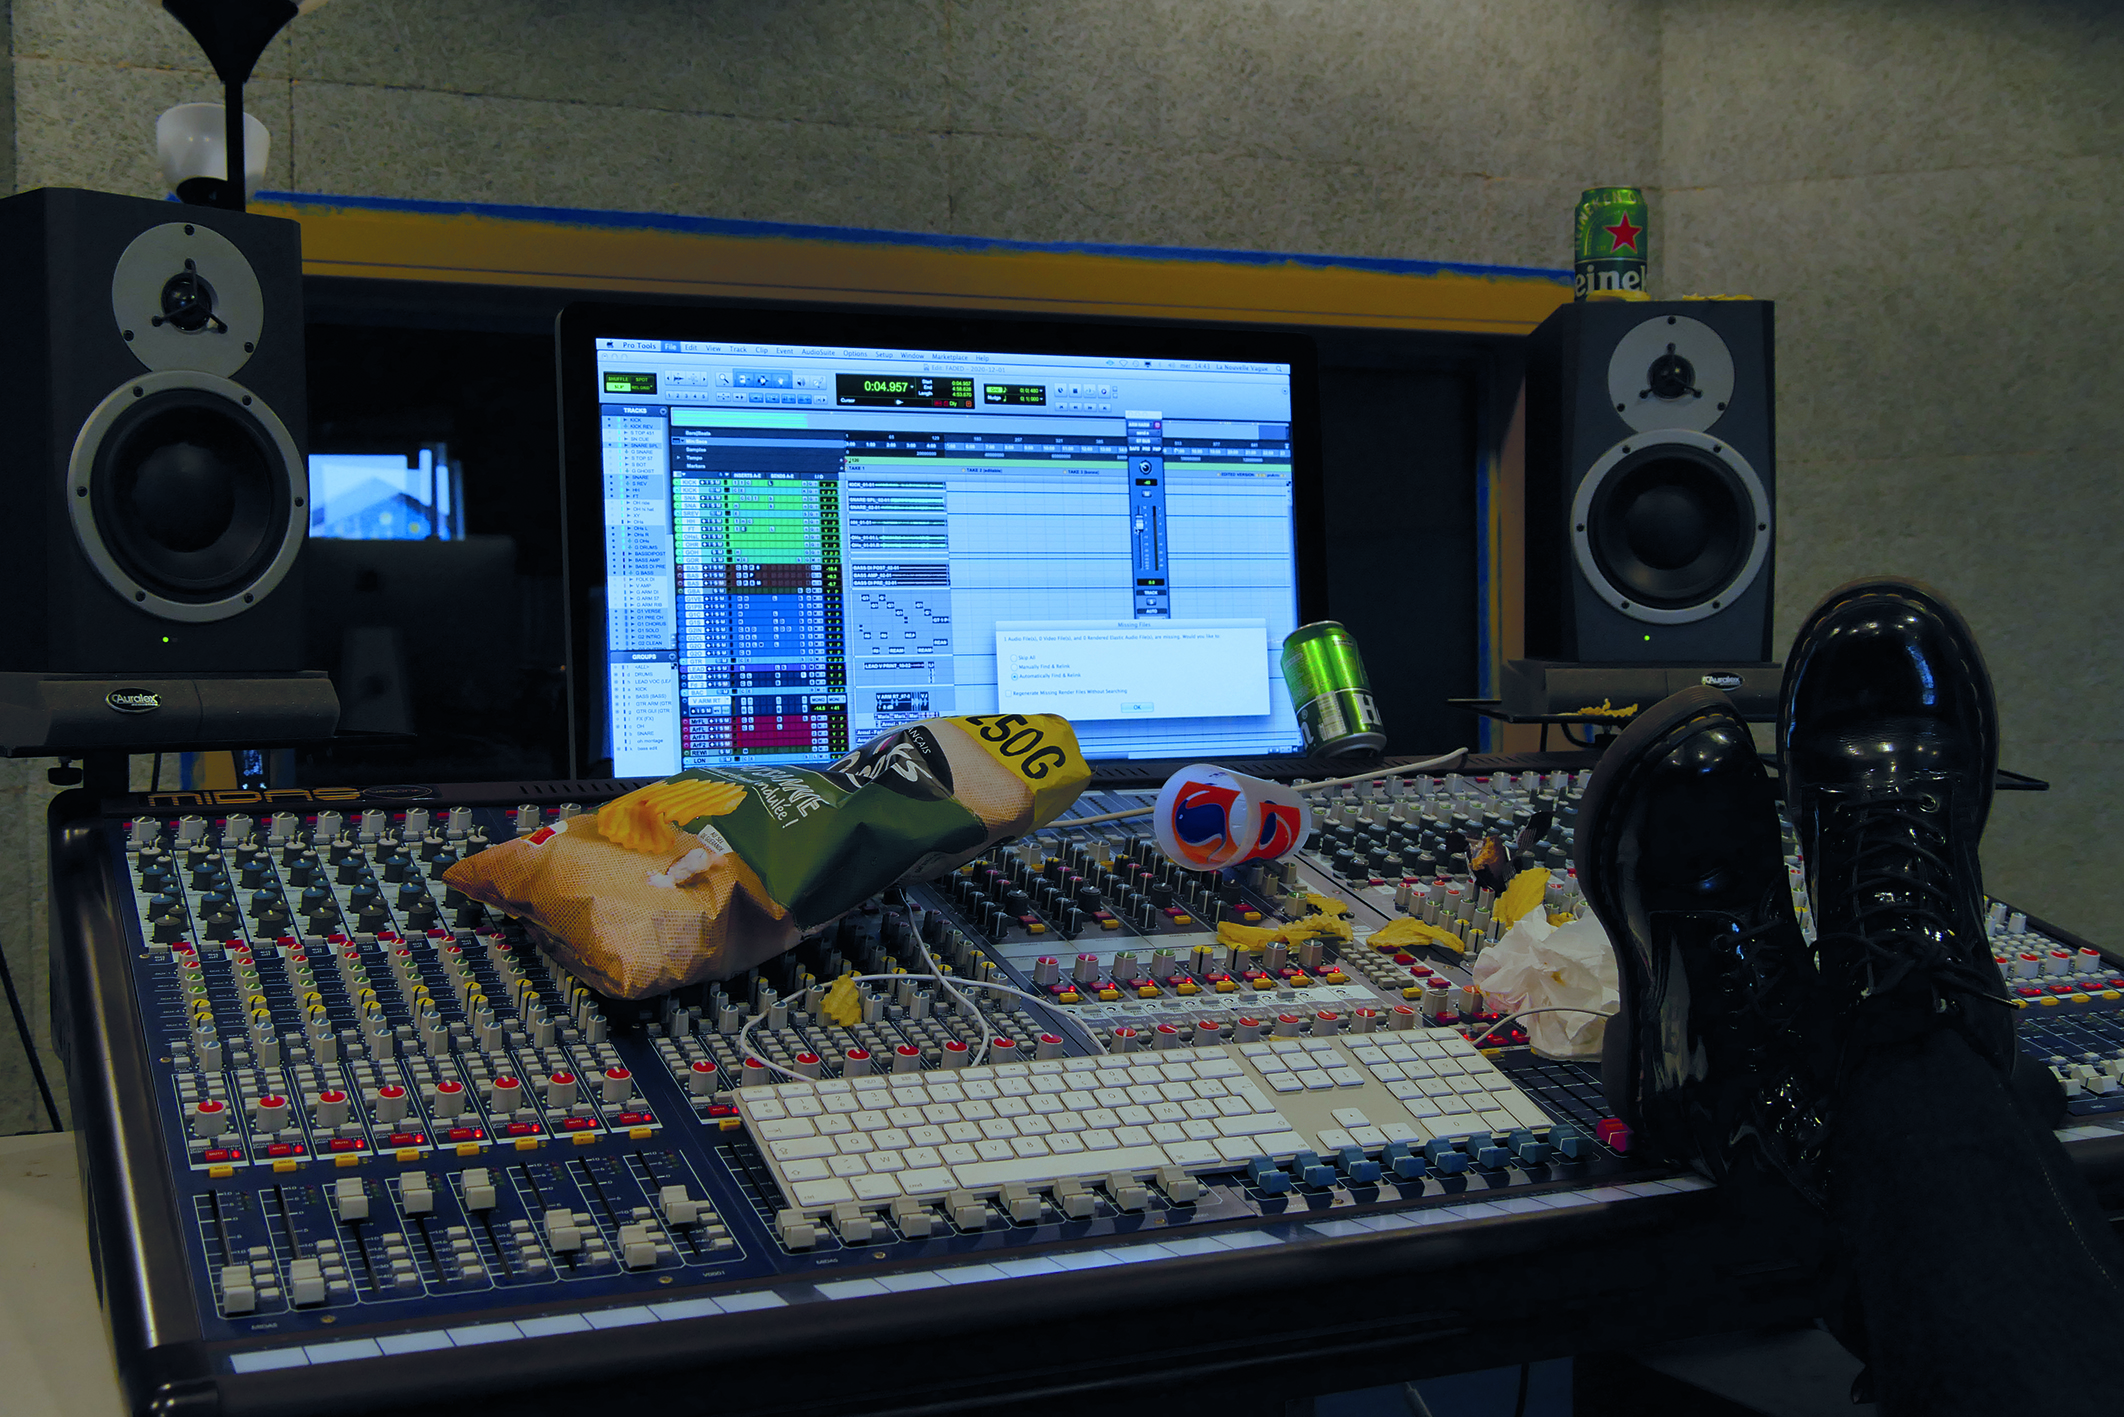 Enregistrer sa musique : chez soi ou en studio d'enregistrement ?